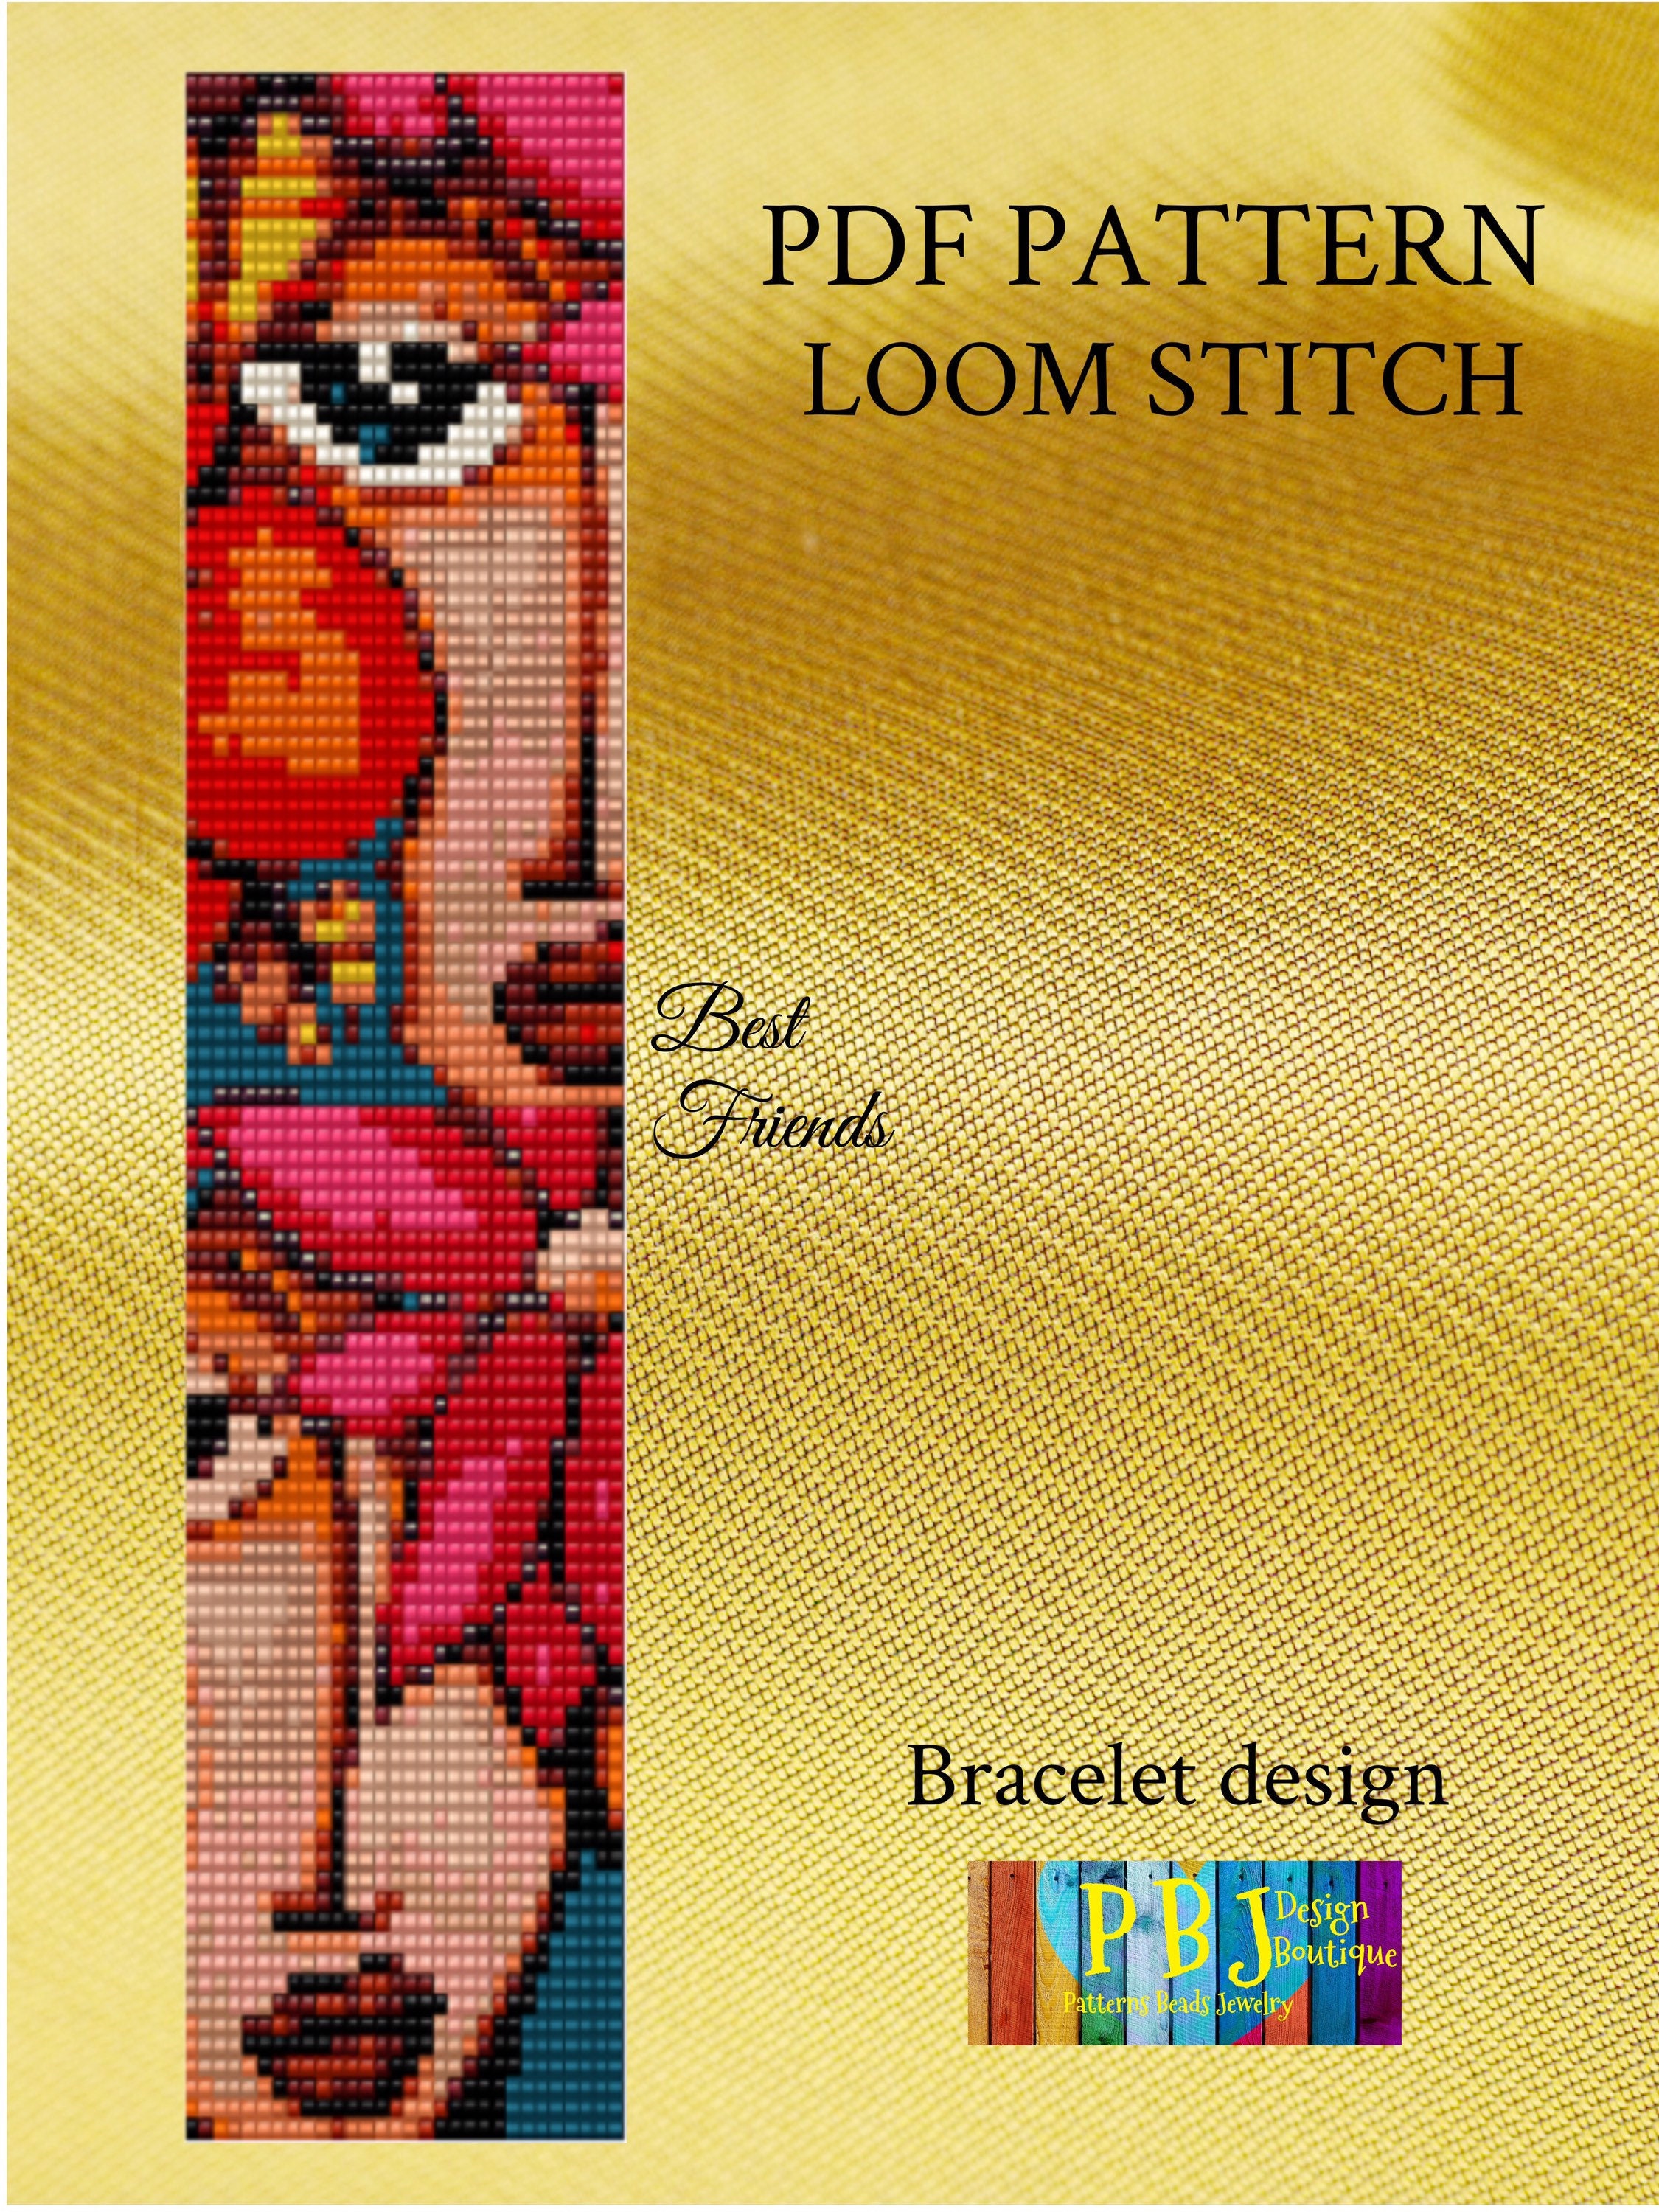 Friendship Bracelets-Seed Beads Bracelet-Hand beaded-Best Friend gift-Pattern Bracelet-Thin Bracelet-Tie on Bracelet-Bohemian-Gift-Tribal